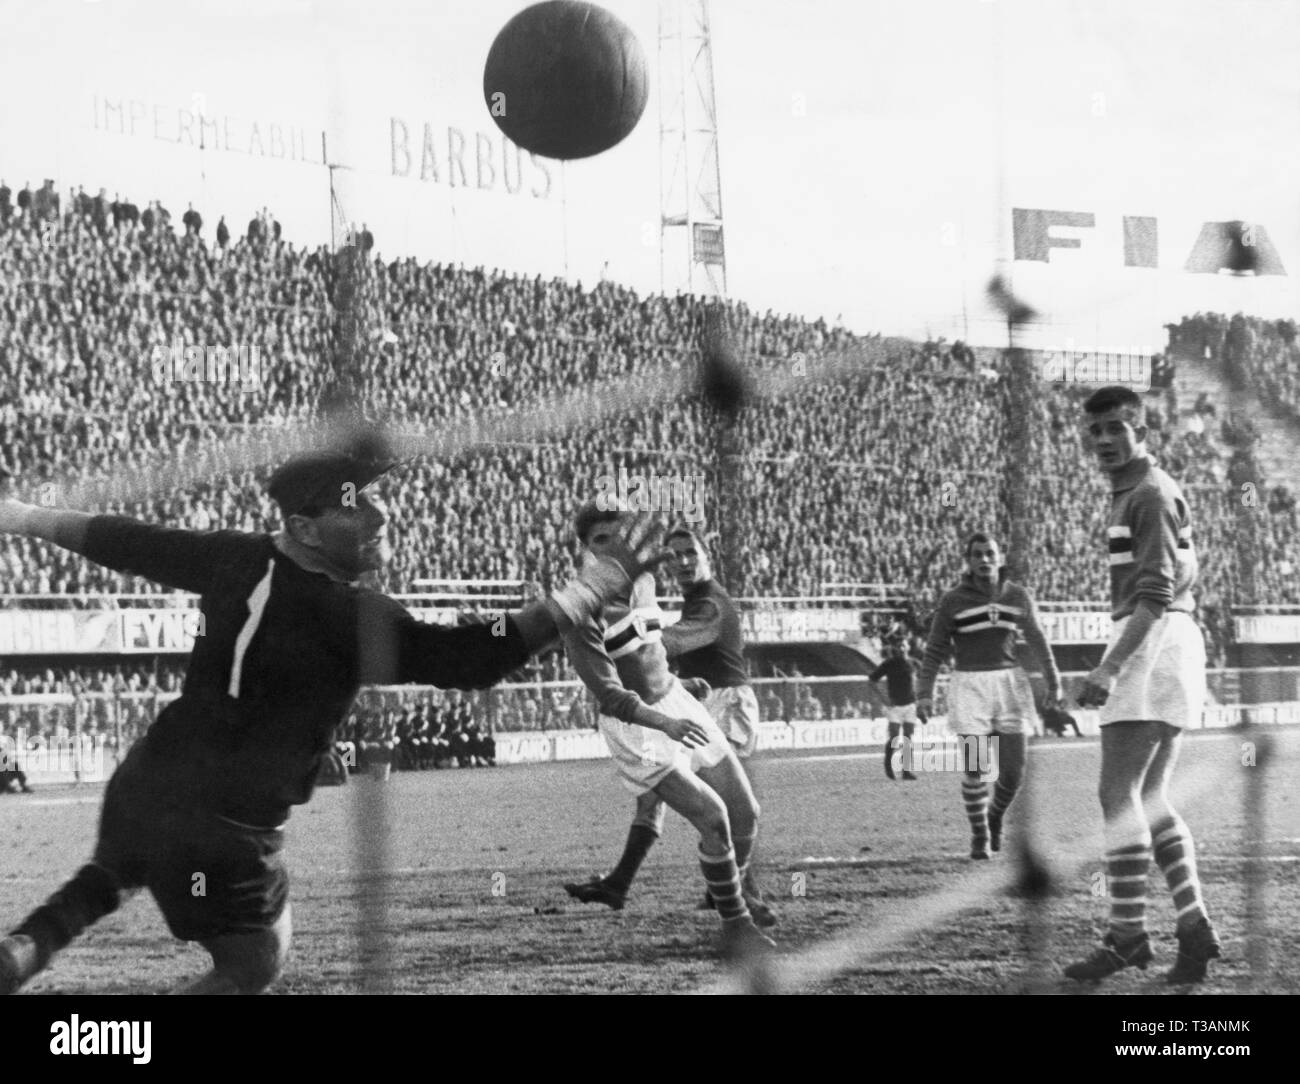 Championnat de football fiorentina, Sampdoria, 1958 Banque D'Images